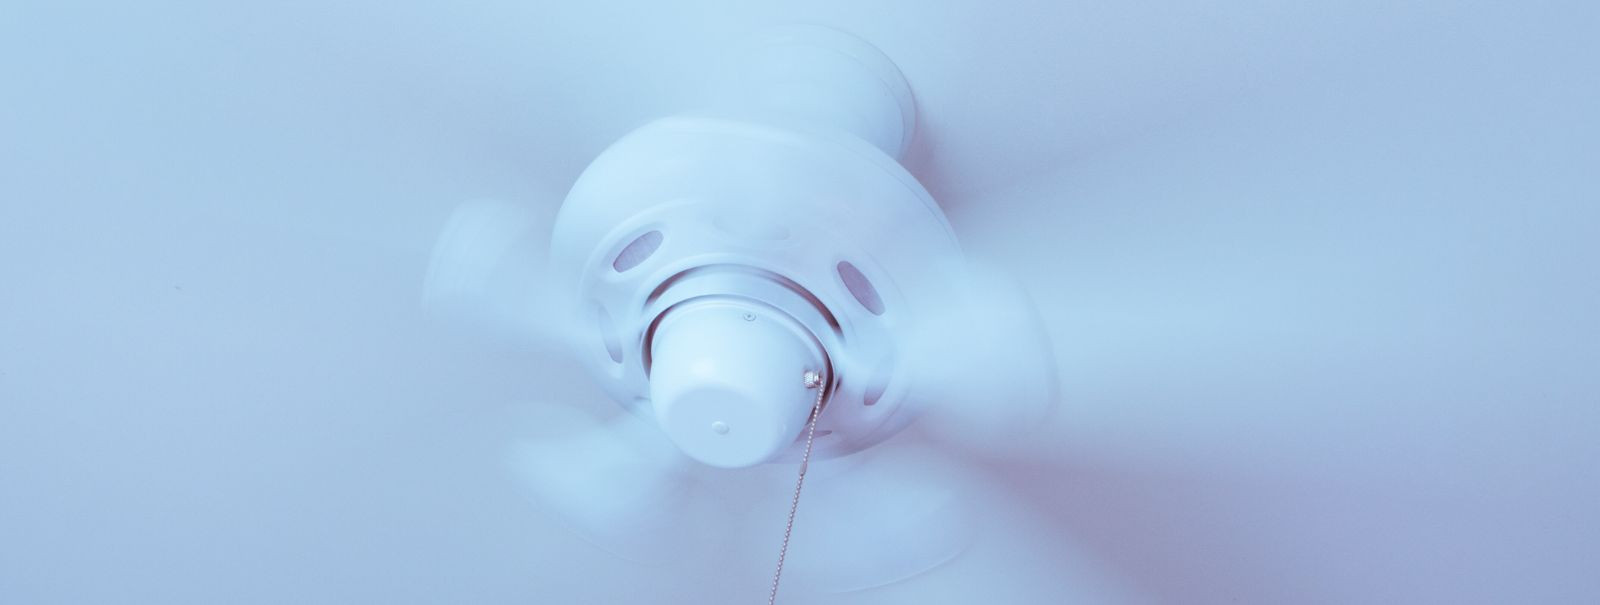 On oluline tagada, et teie kodus oleks korralik ventilatsioon, et säilitada tervislik ja mugav elukeskkond. Siiski ei pööra paljud koduomanikud tähelepanu märki